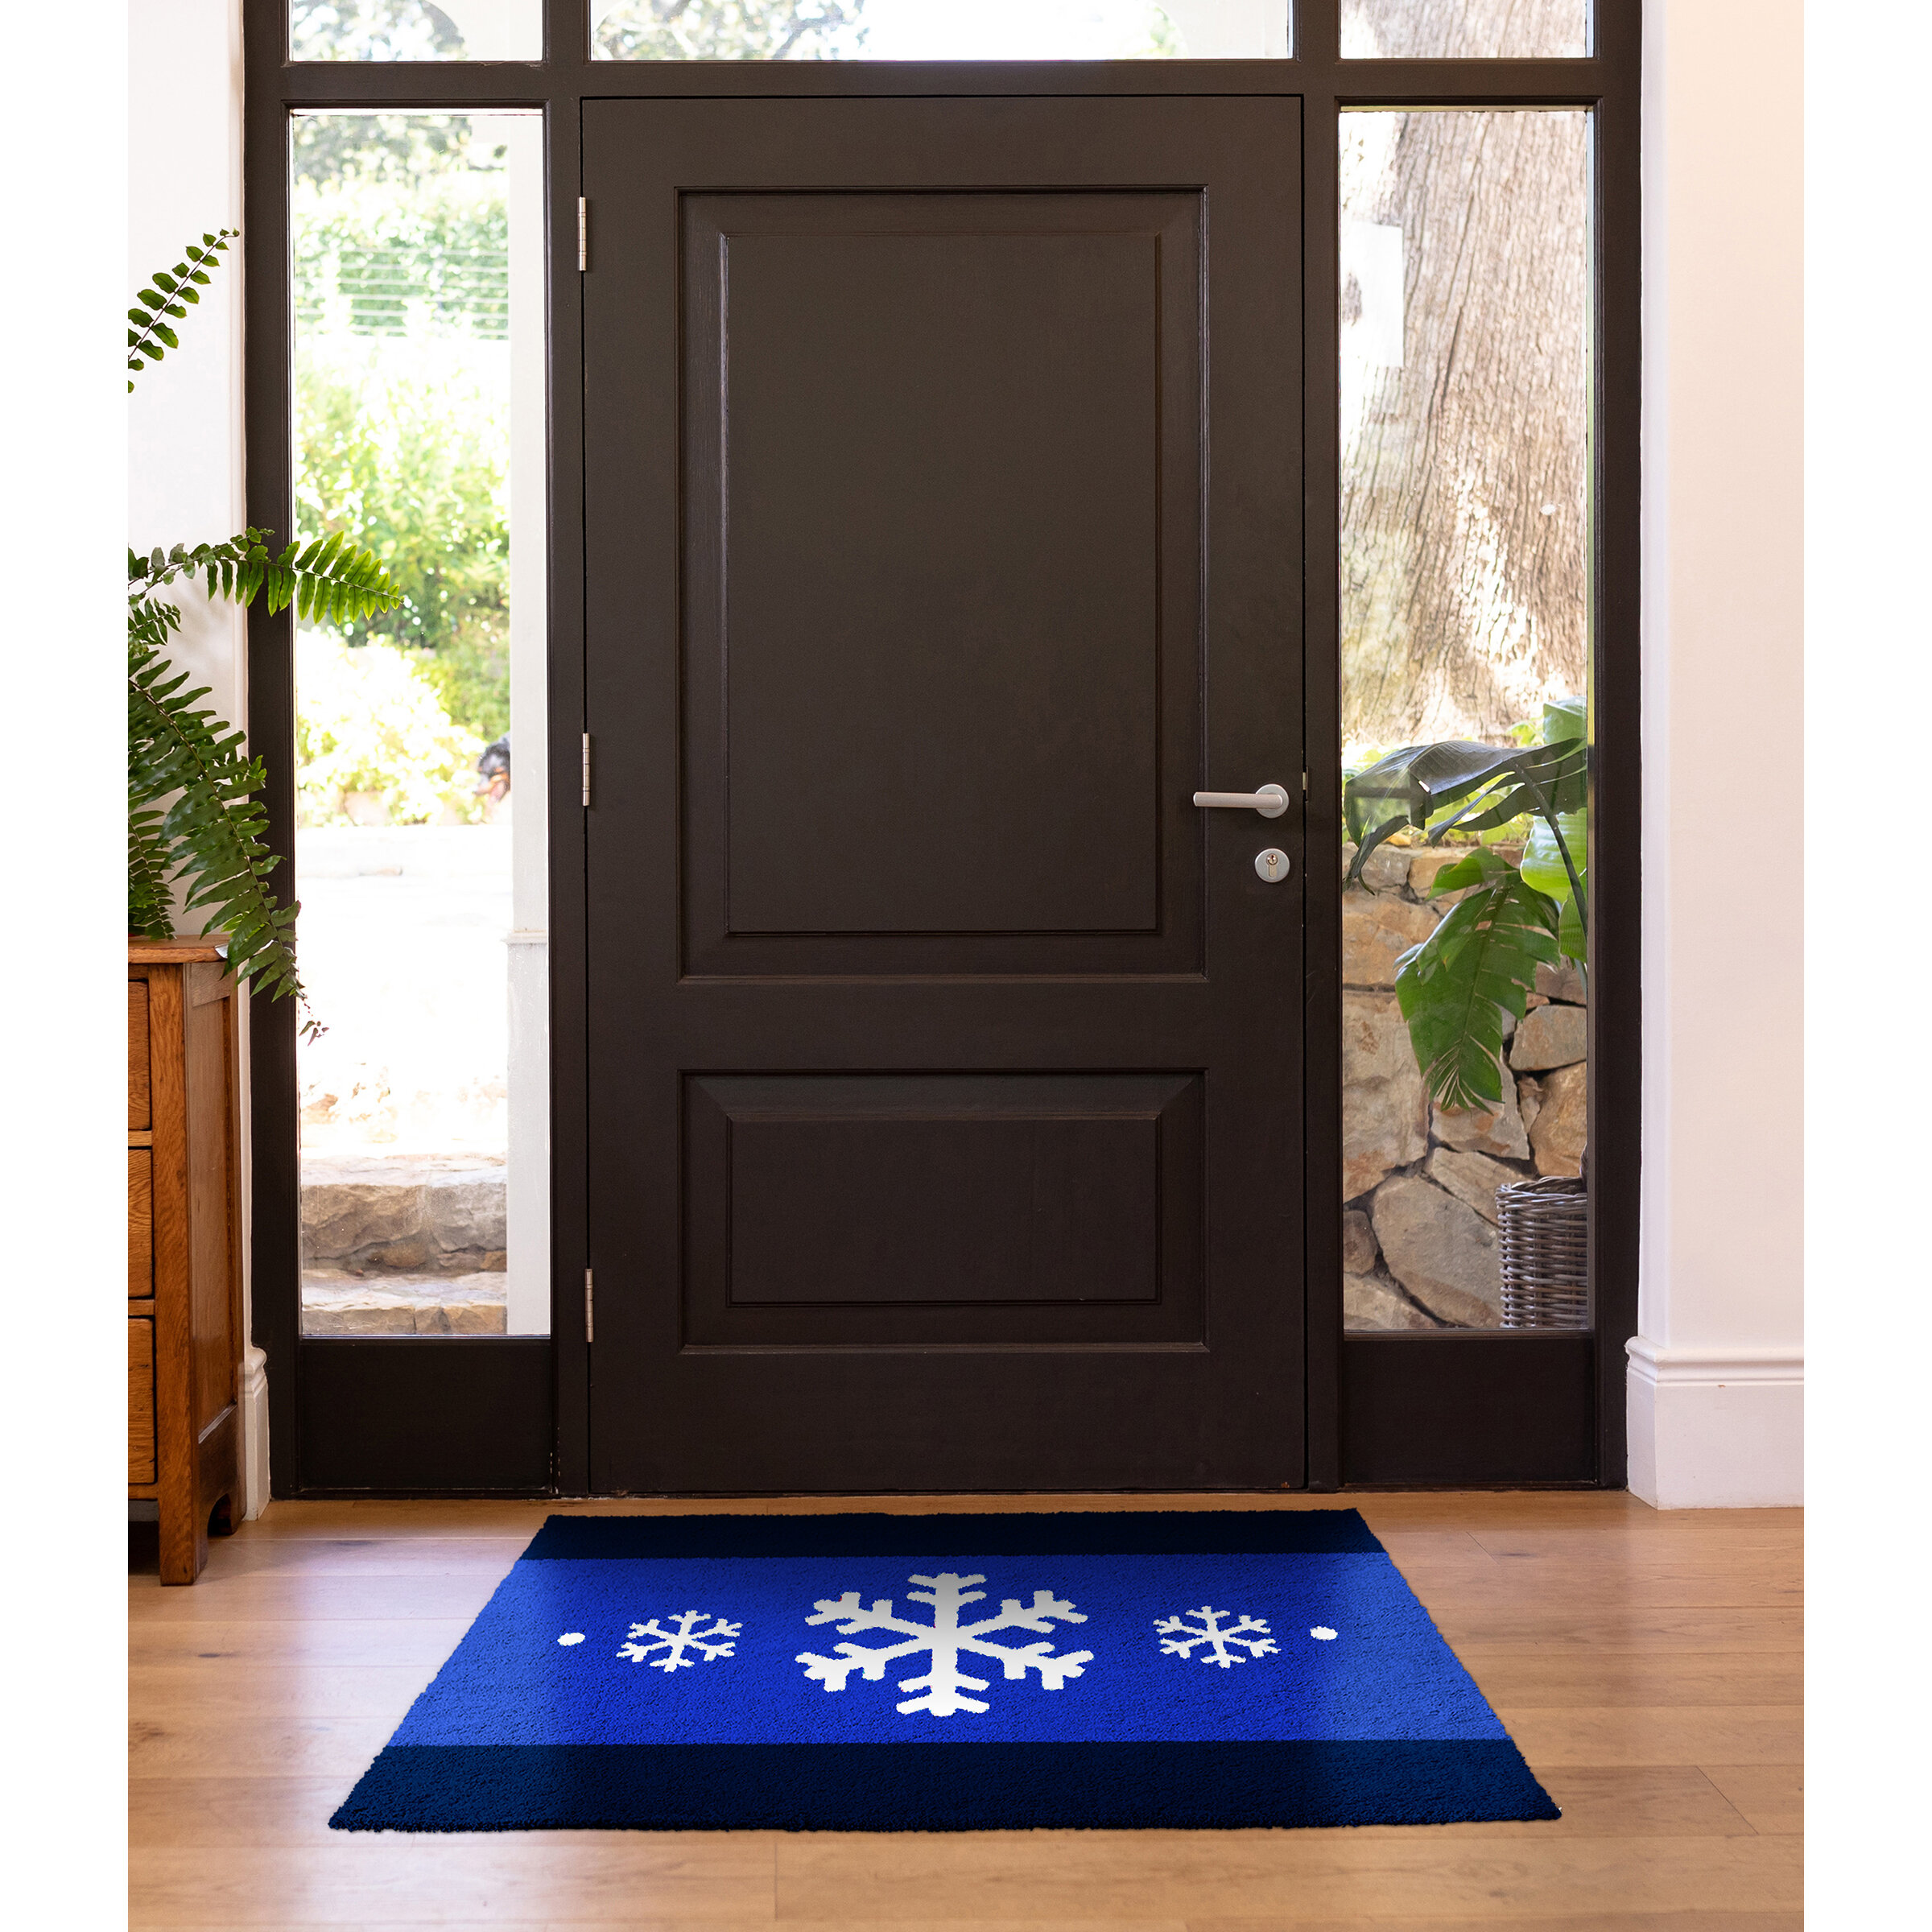 https://assets.wfcdn.com/im/79384768/compr-r85/1501/150129293/colorstar-let-it-snow-22-in-x-34-in-machine-washable-indoor-door-mat.jpg